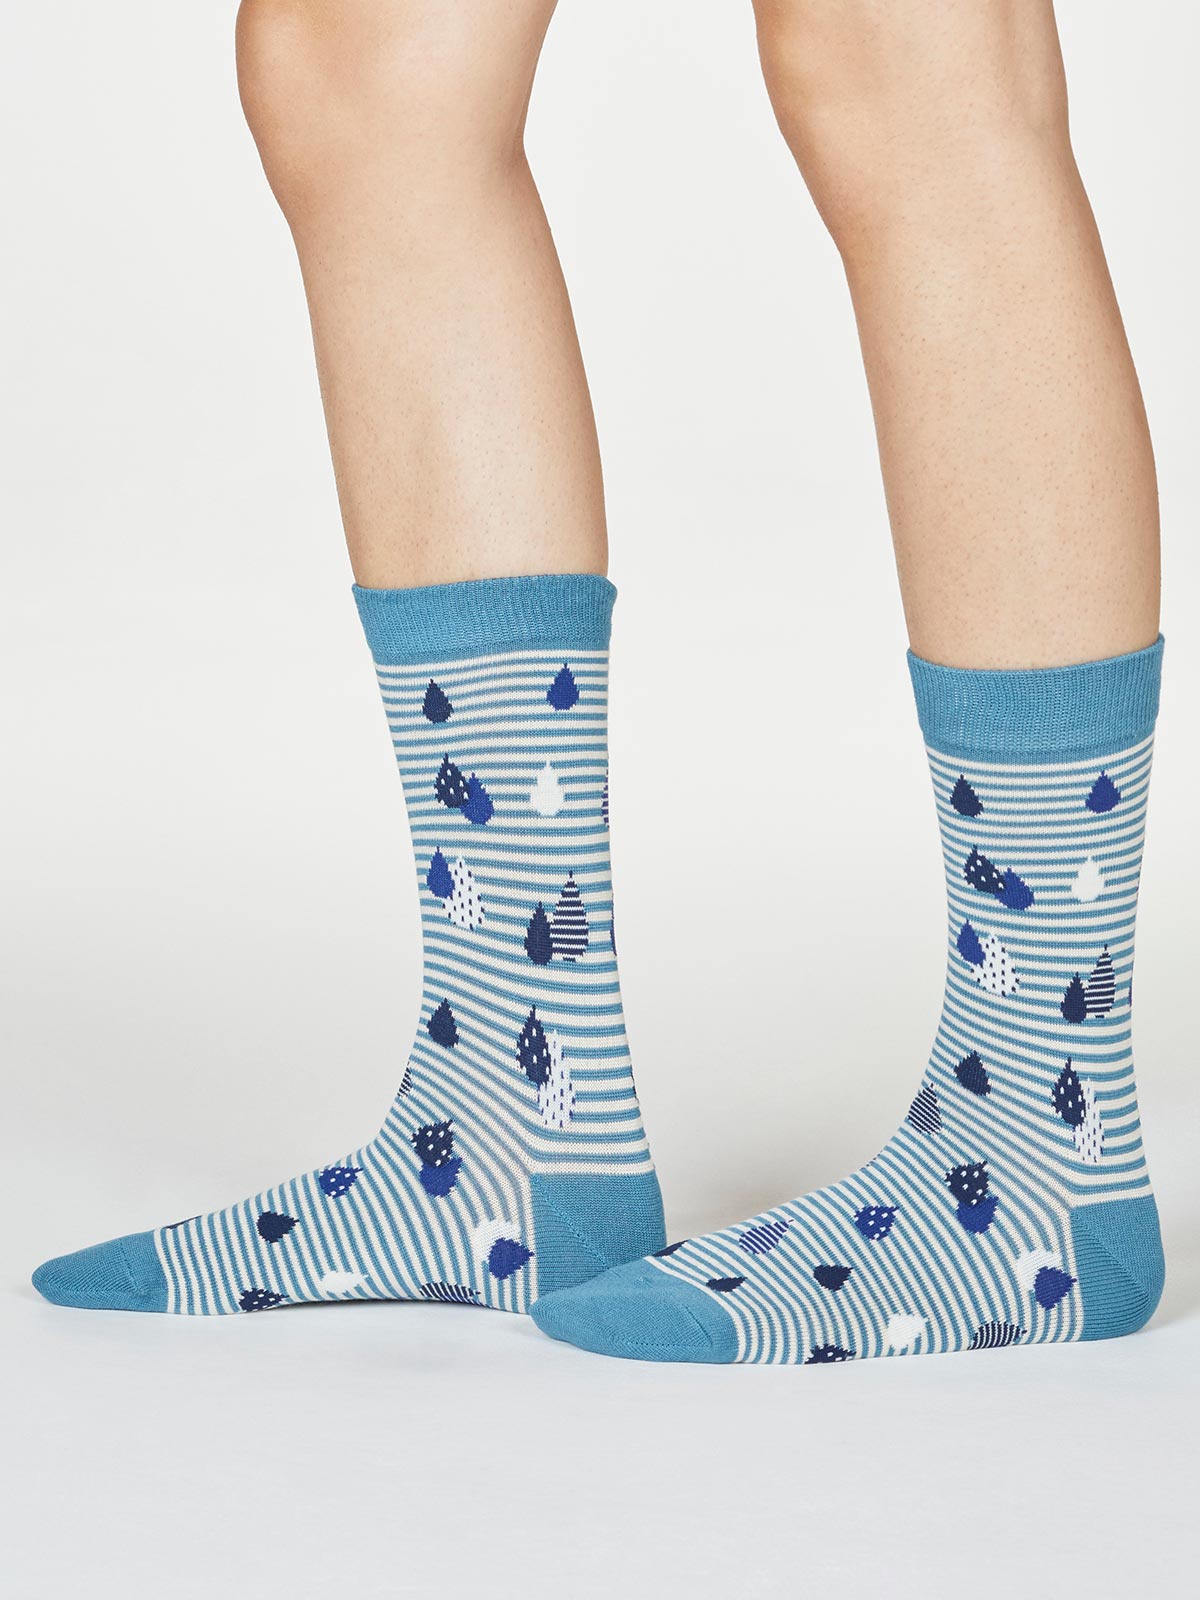 Damen-Socken Juliette Raindrop in River Blue 